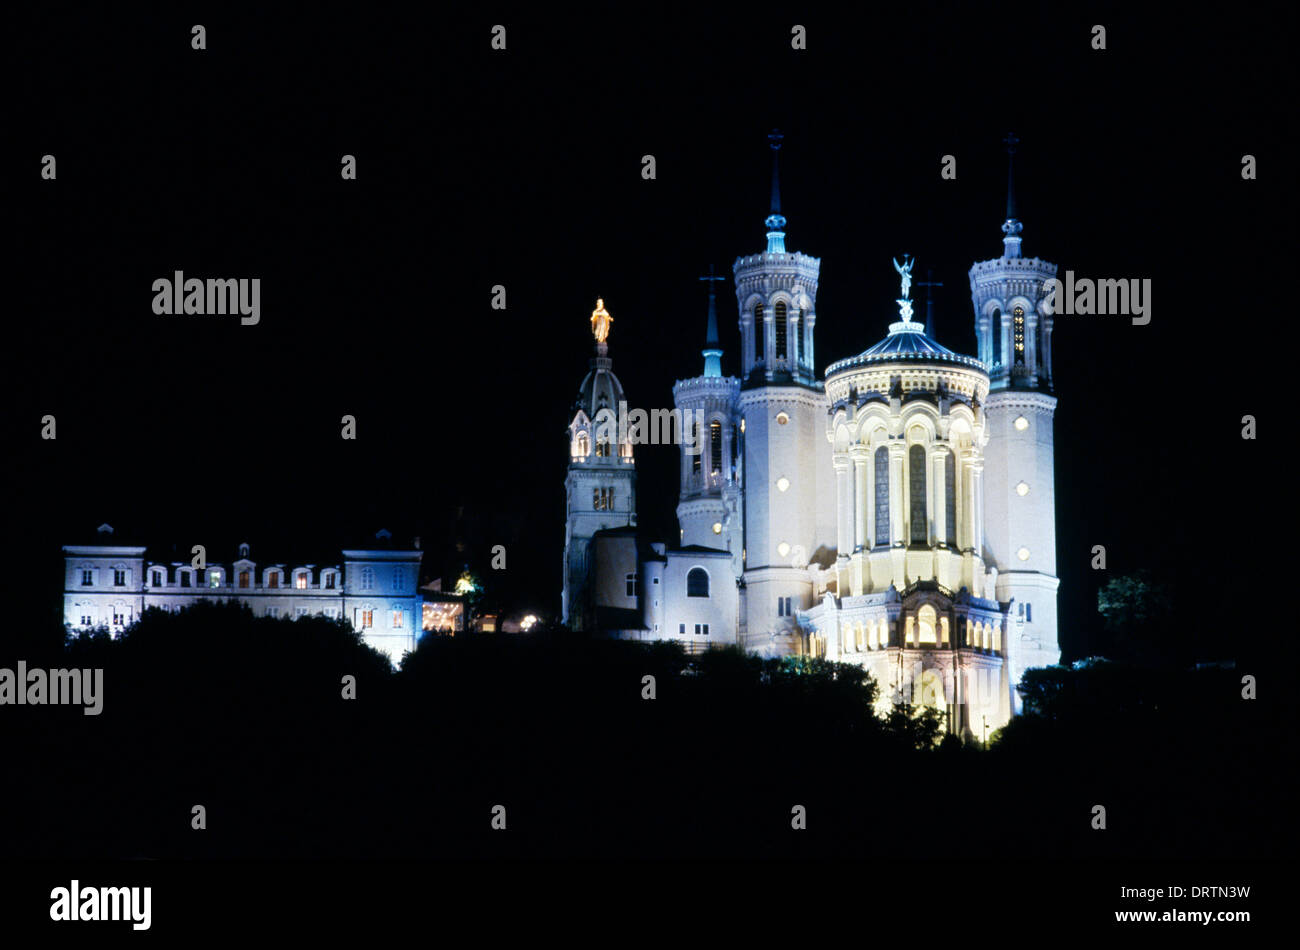 Lyon France Notre-Dame De Fourviere with the Chapelle de La Vierge At Night Stock Photo